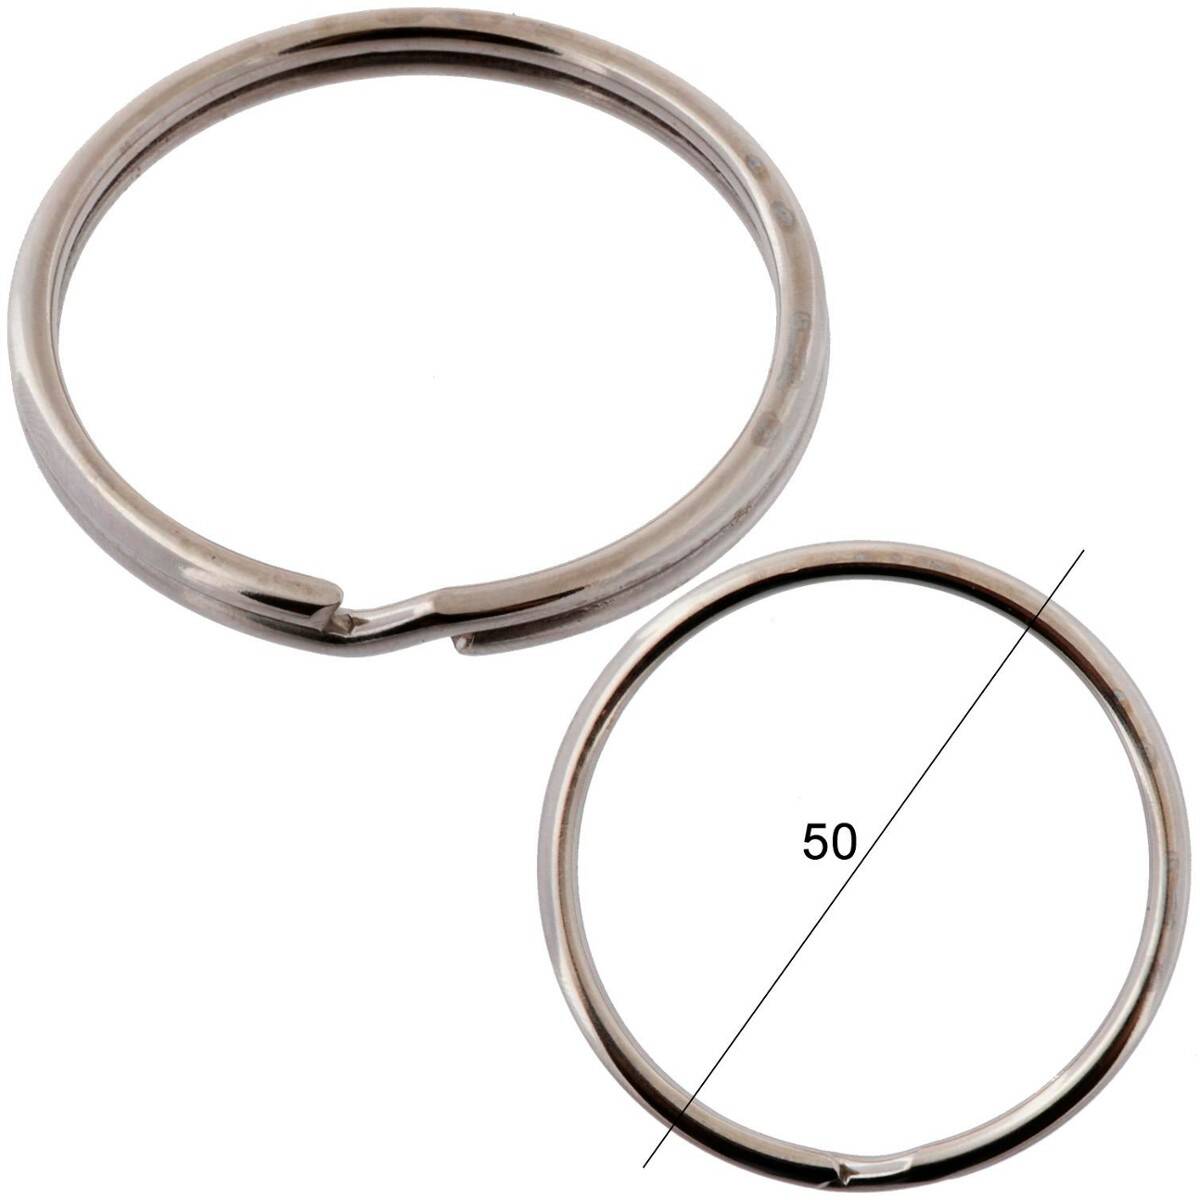 Key rings diameter 50mm